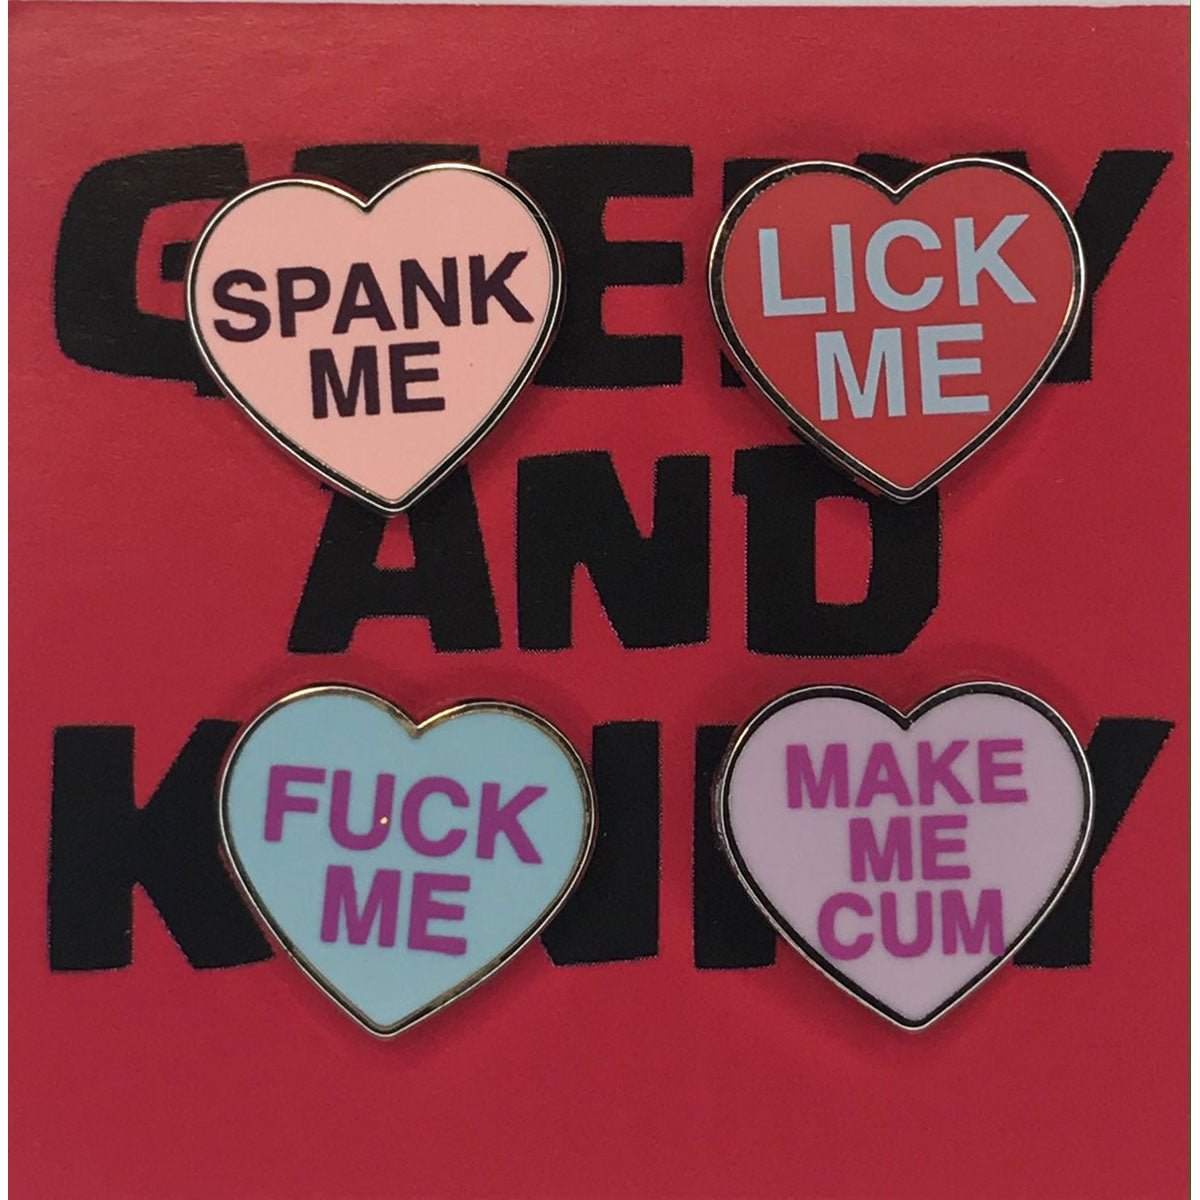 Geeky & Kinky Heart Pin 4pk (Spank Me - Lick Me - Fuck Me - Make Me Cum)